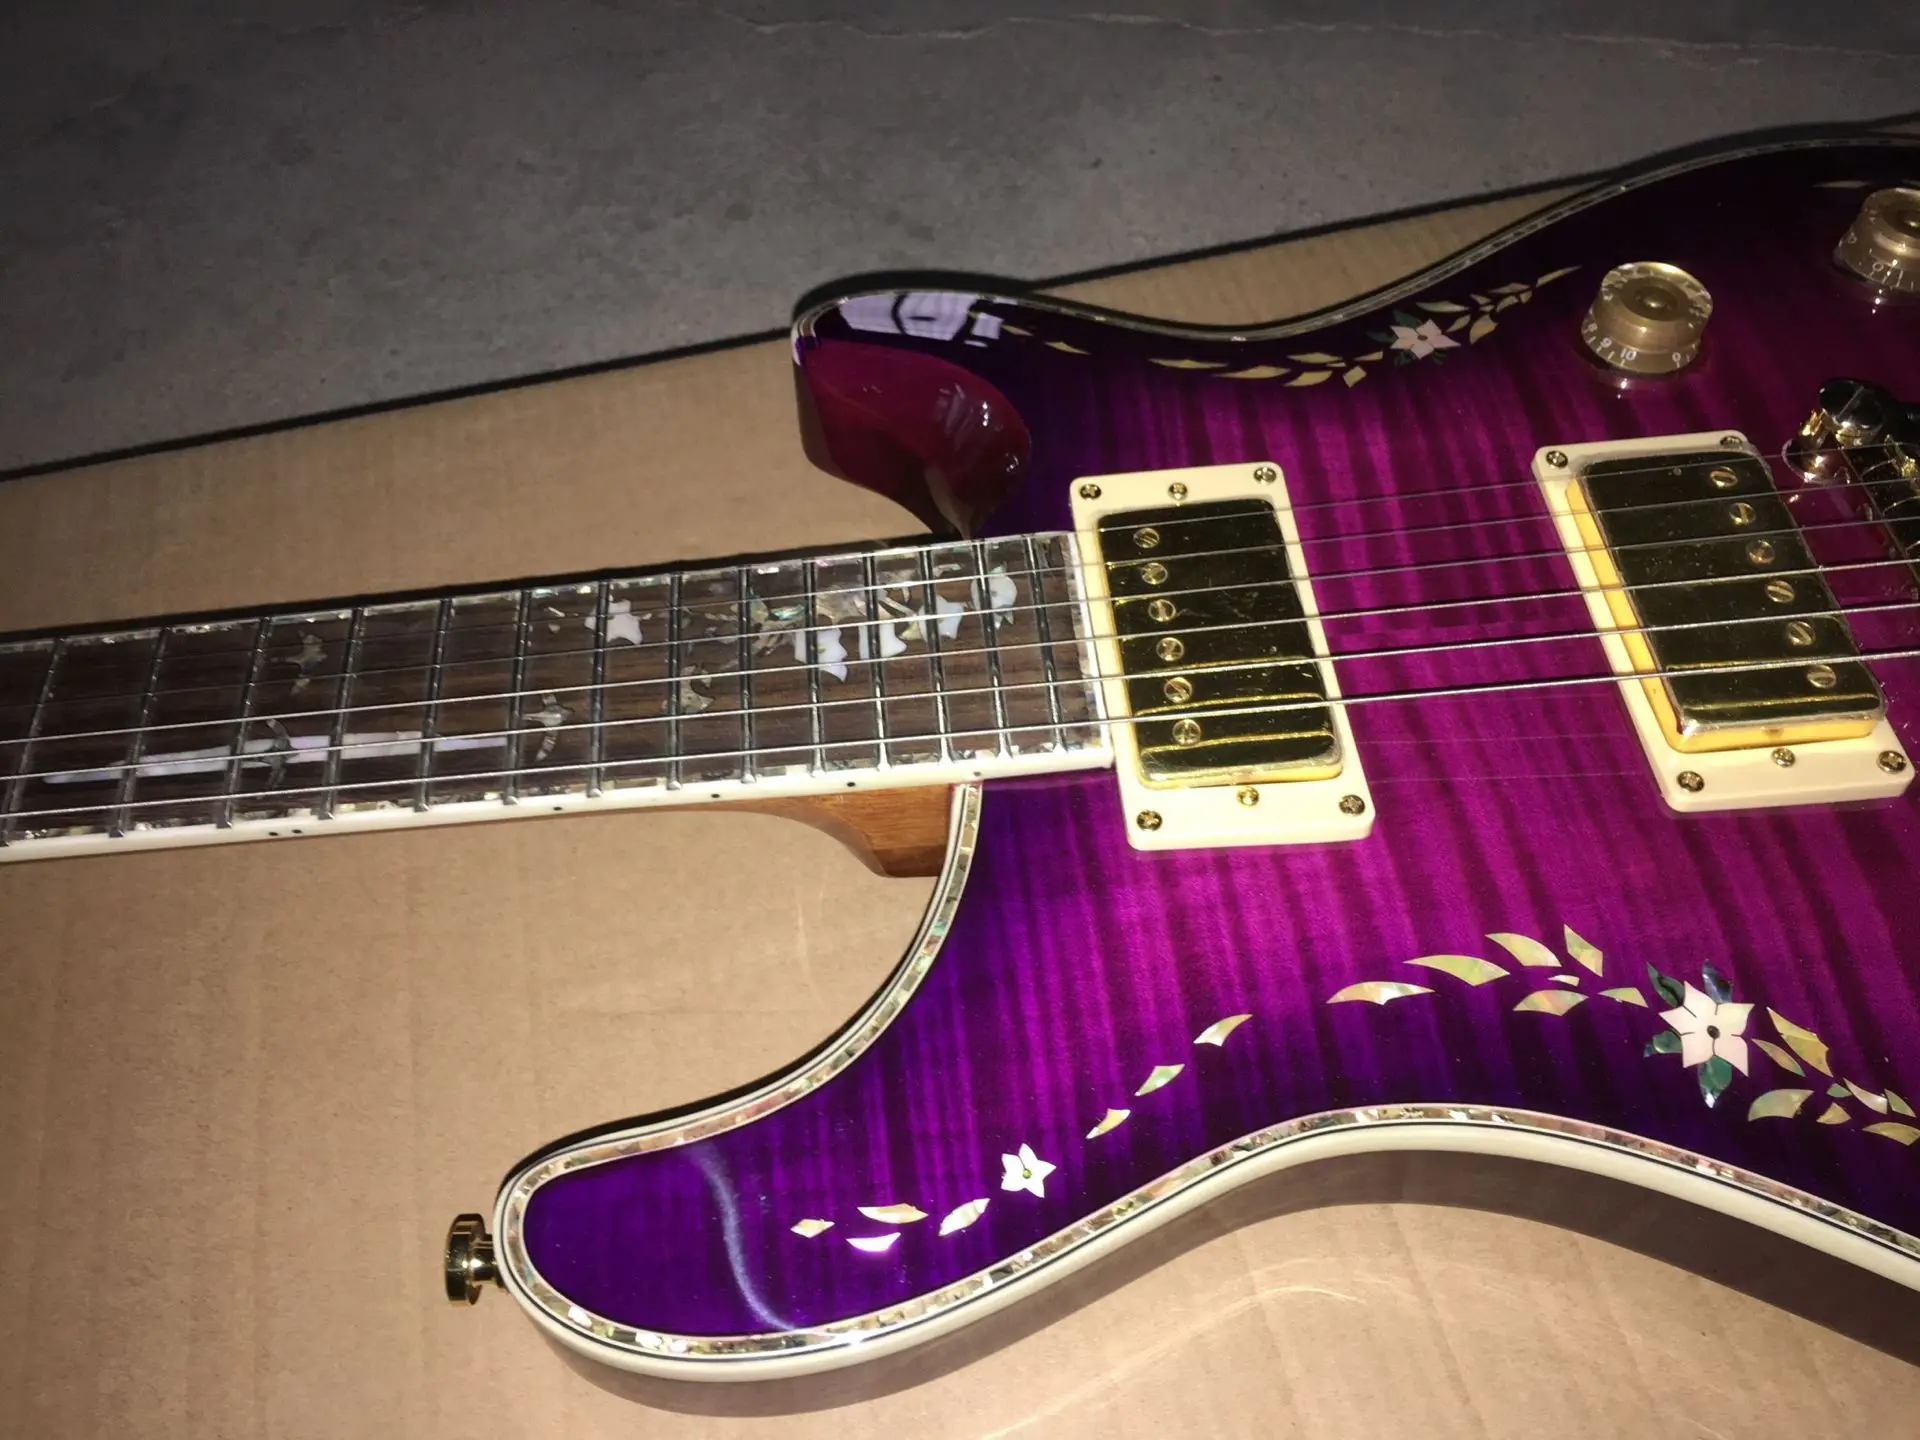 Новая стандартная пользовательская электрическая гитара, фингерборд из палисандра, фиолетовый цвет tiger flame top gitaar. Высокое качество пикапов.